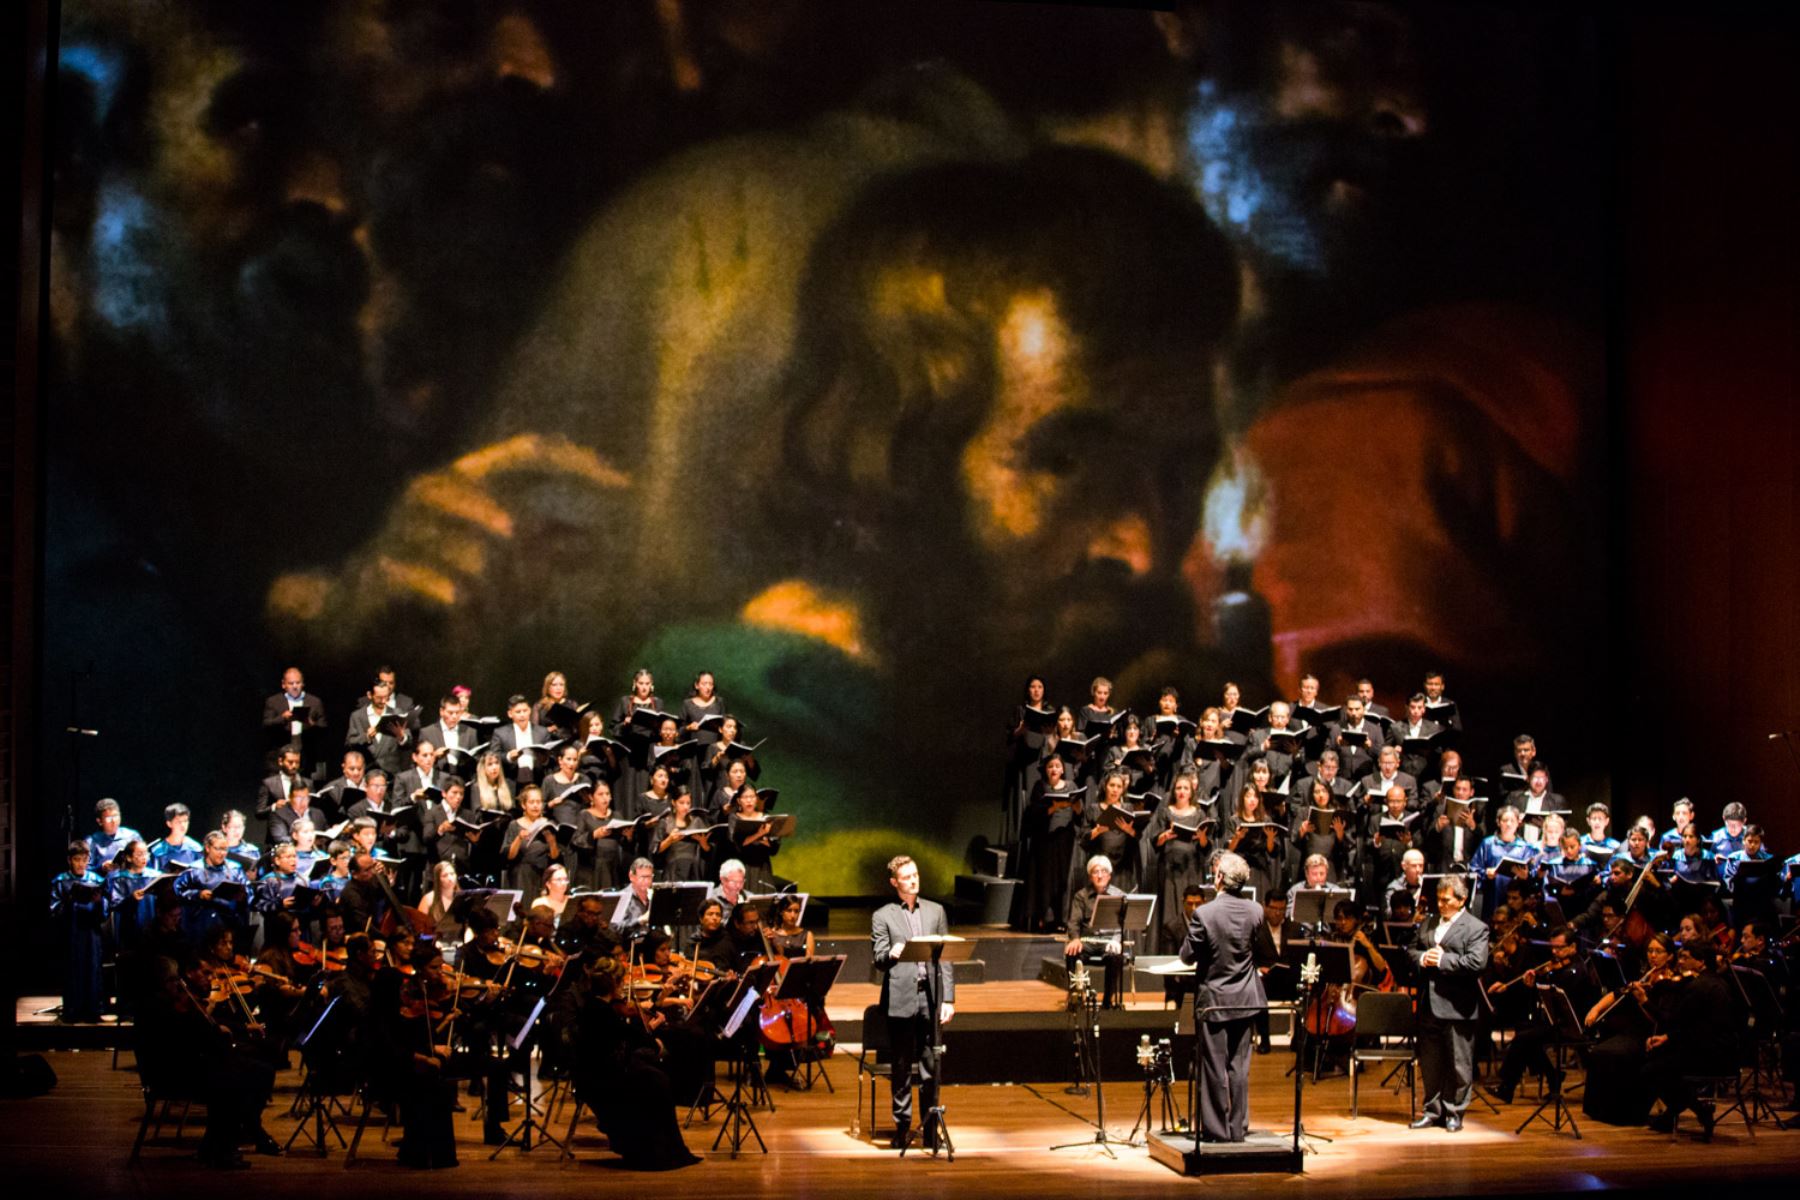 Orquesta Sinfónica Nacional y Coro Nacional del Perú presentan concierto.